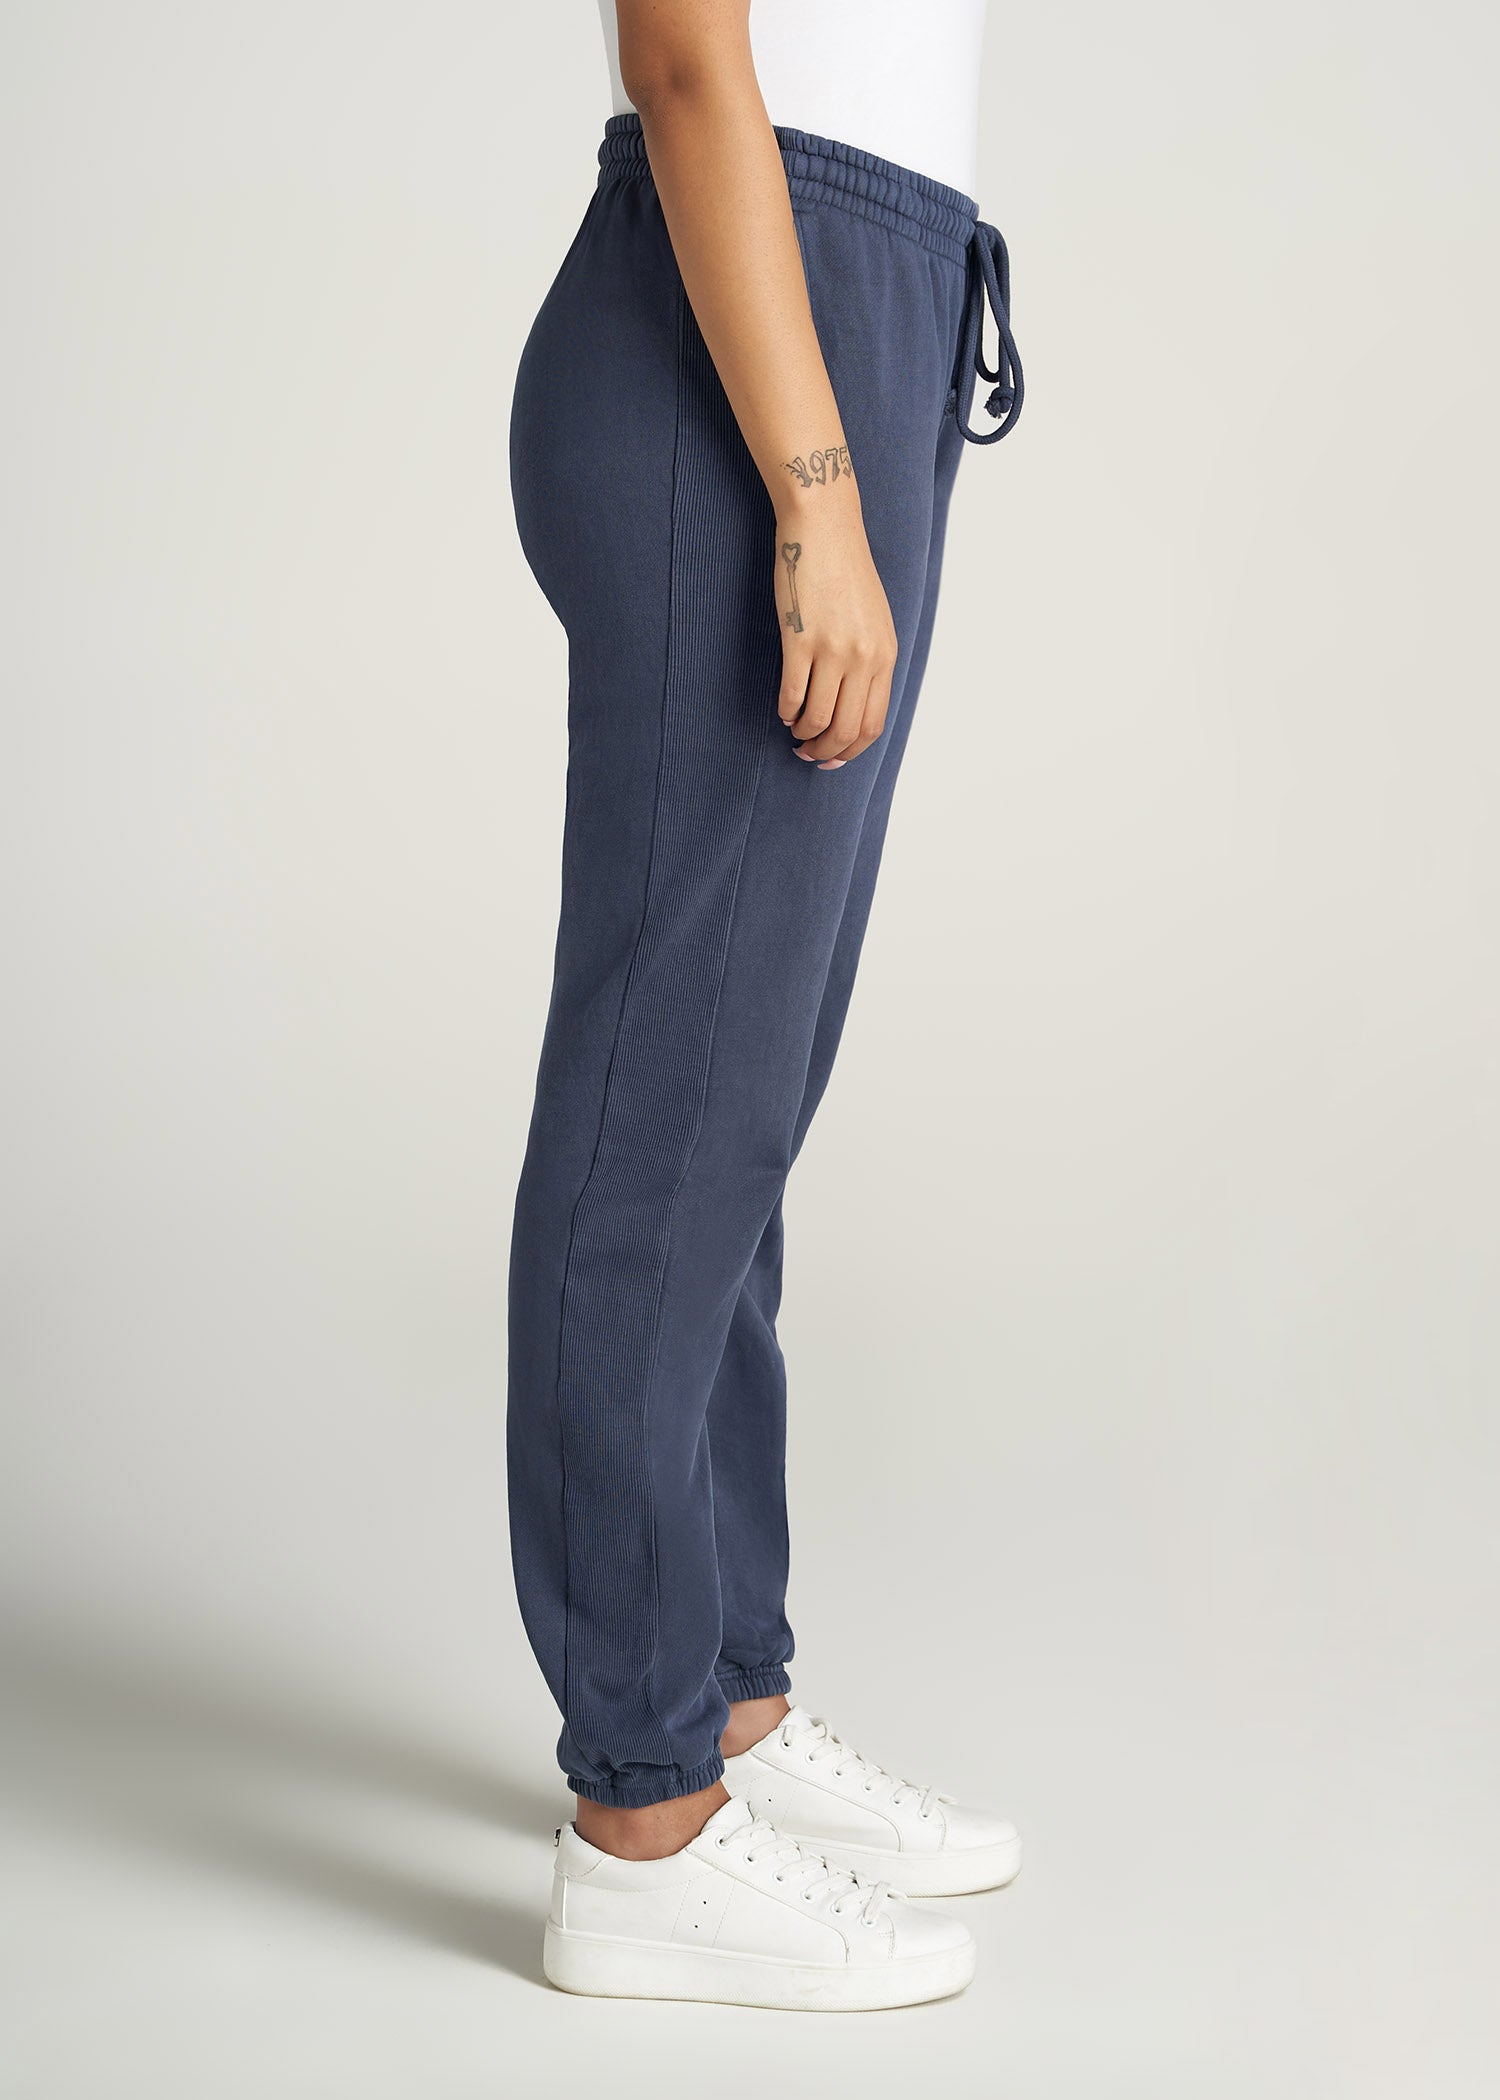    American-Tall-Women-GarmentDye-Sweatpants-Navy-side